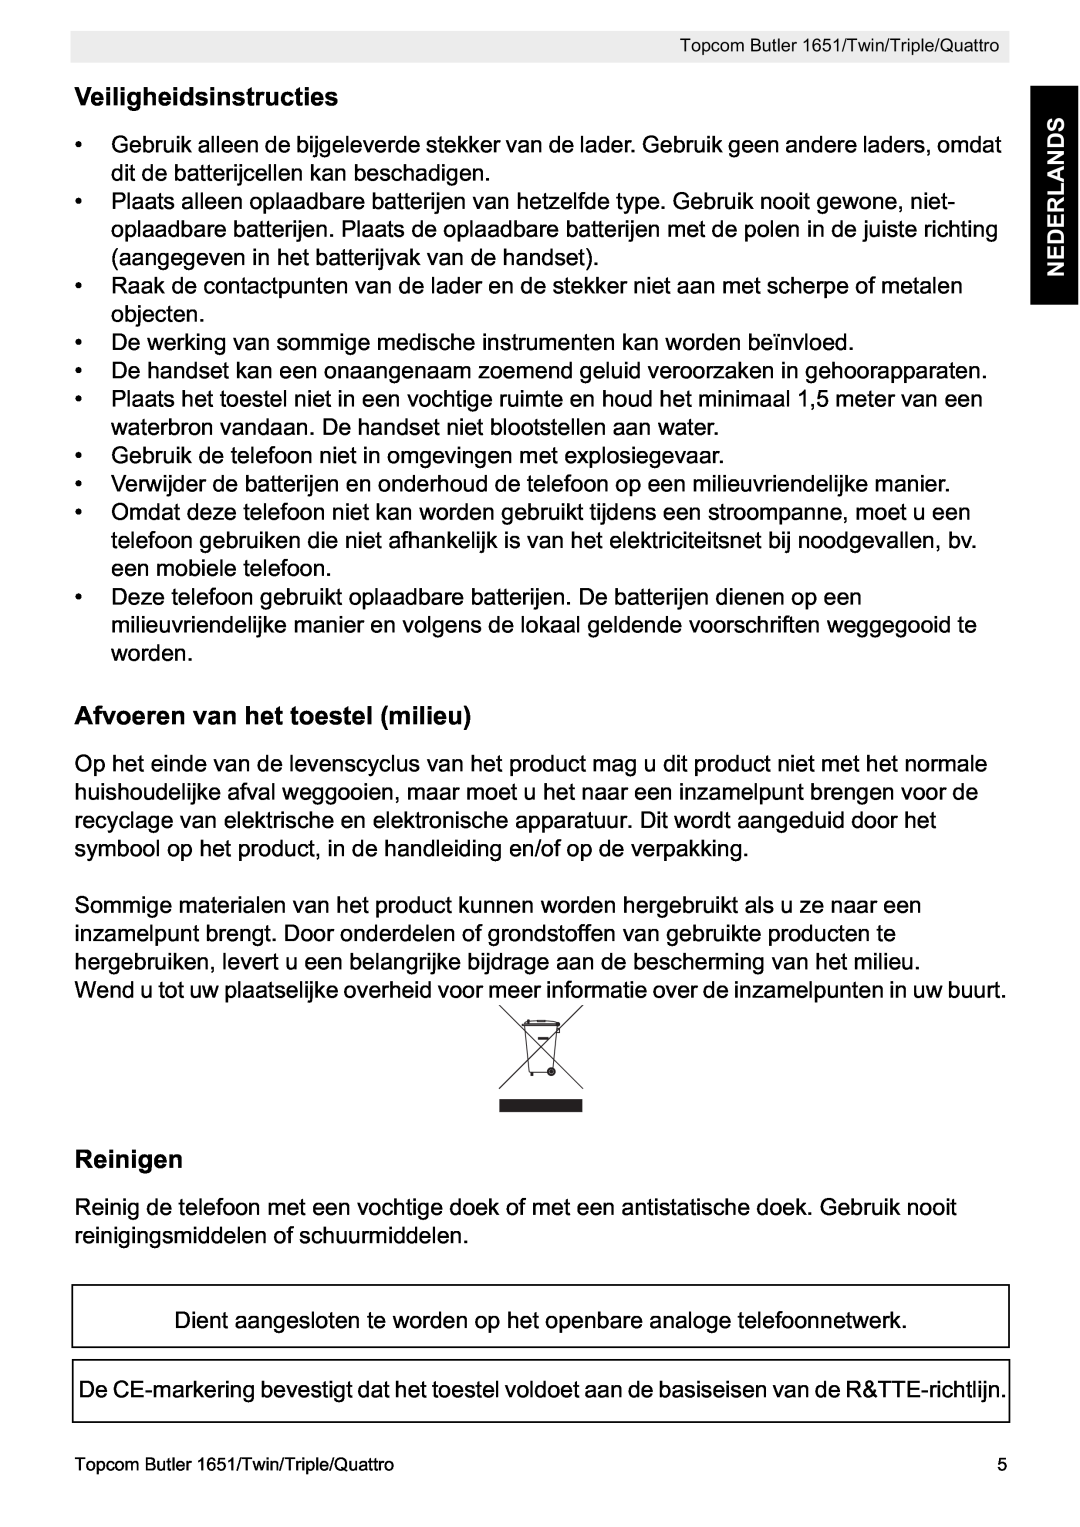 Topcom 1651 manual Veiligheidsinstructies, Afvoeren van het toestel milieu, Reinigen, Nederlands 